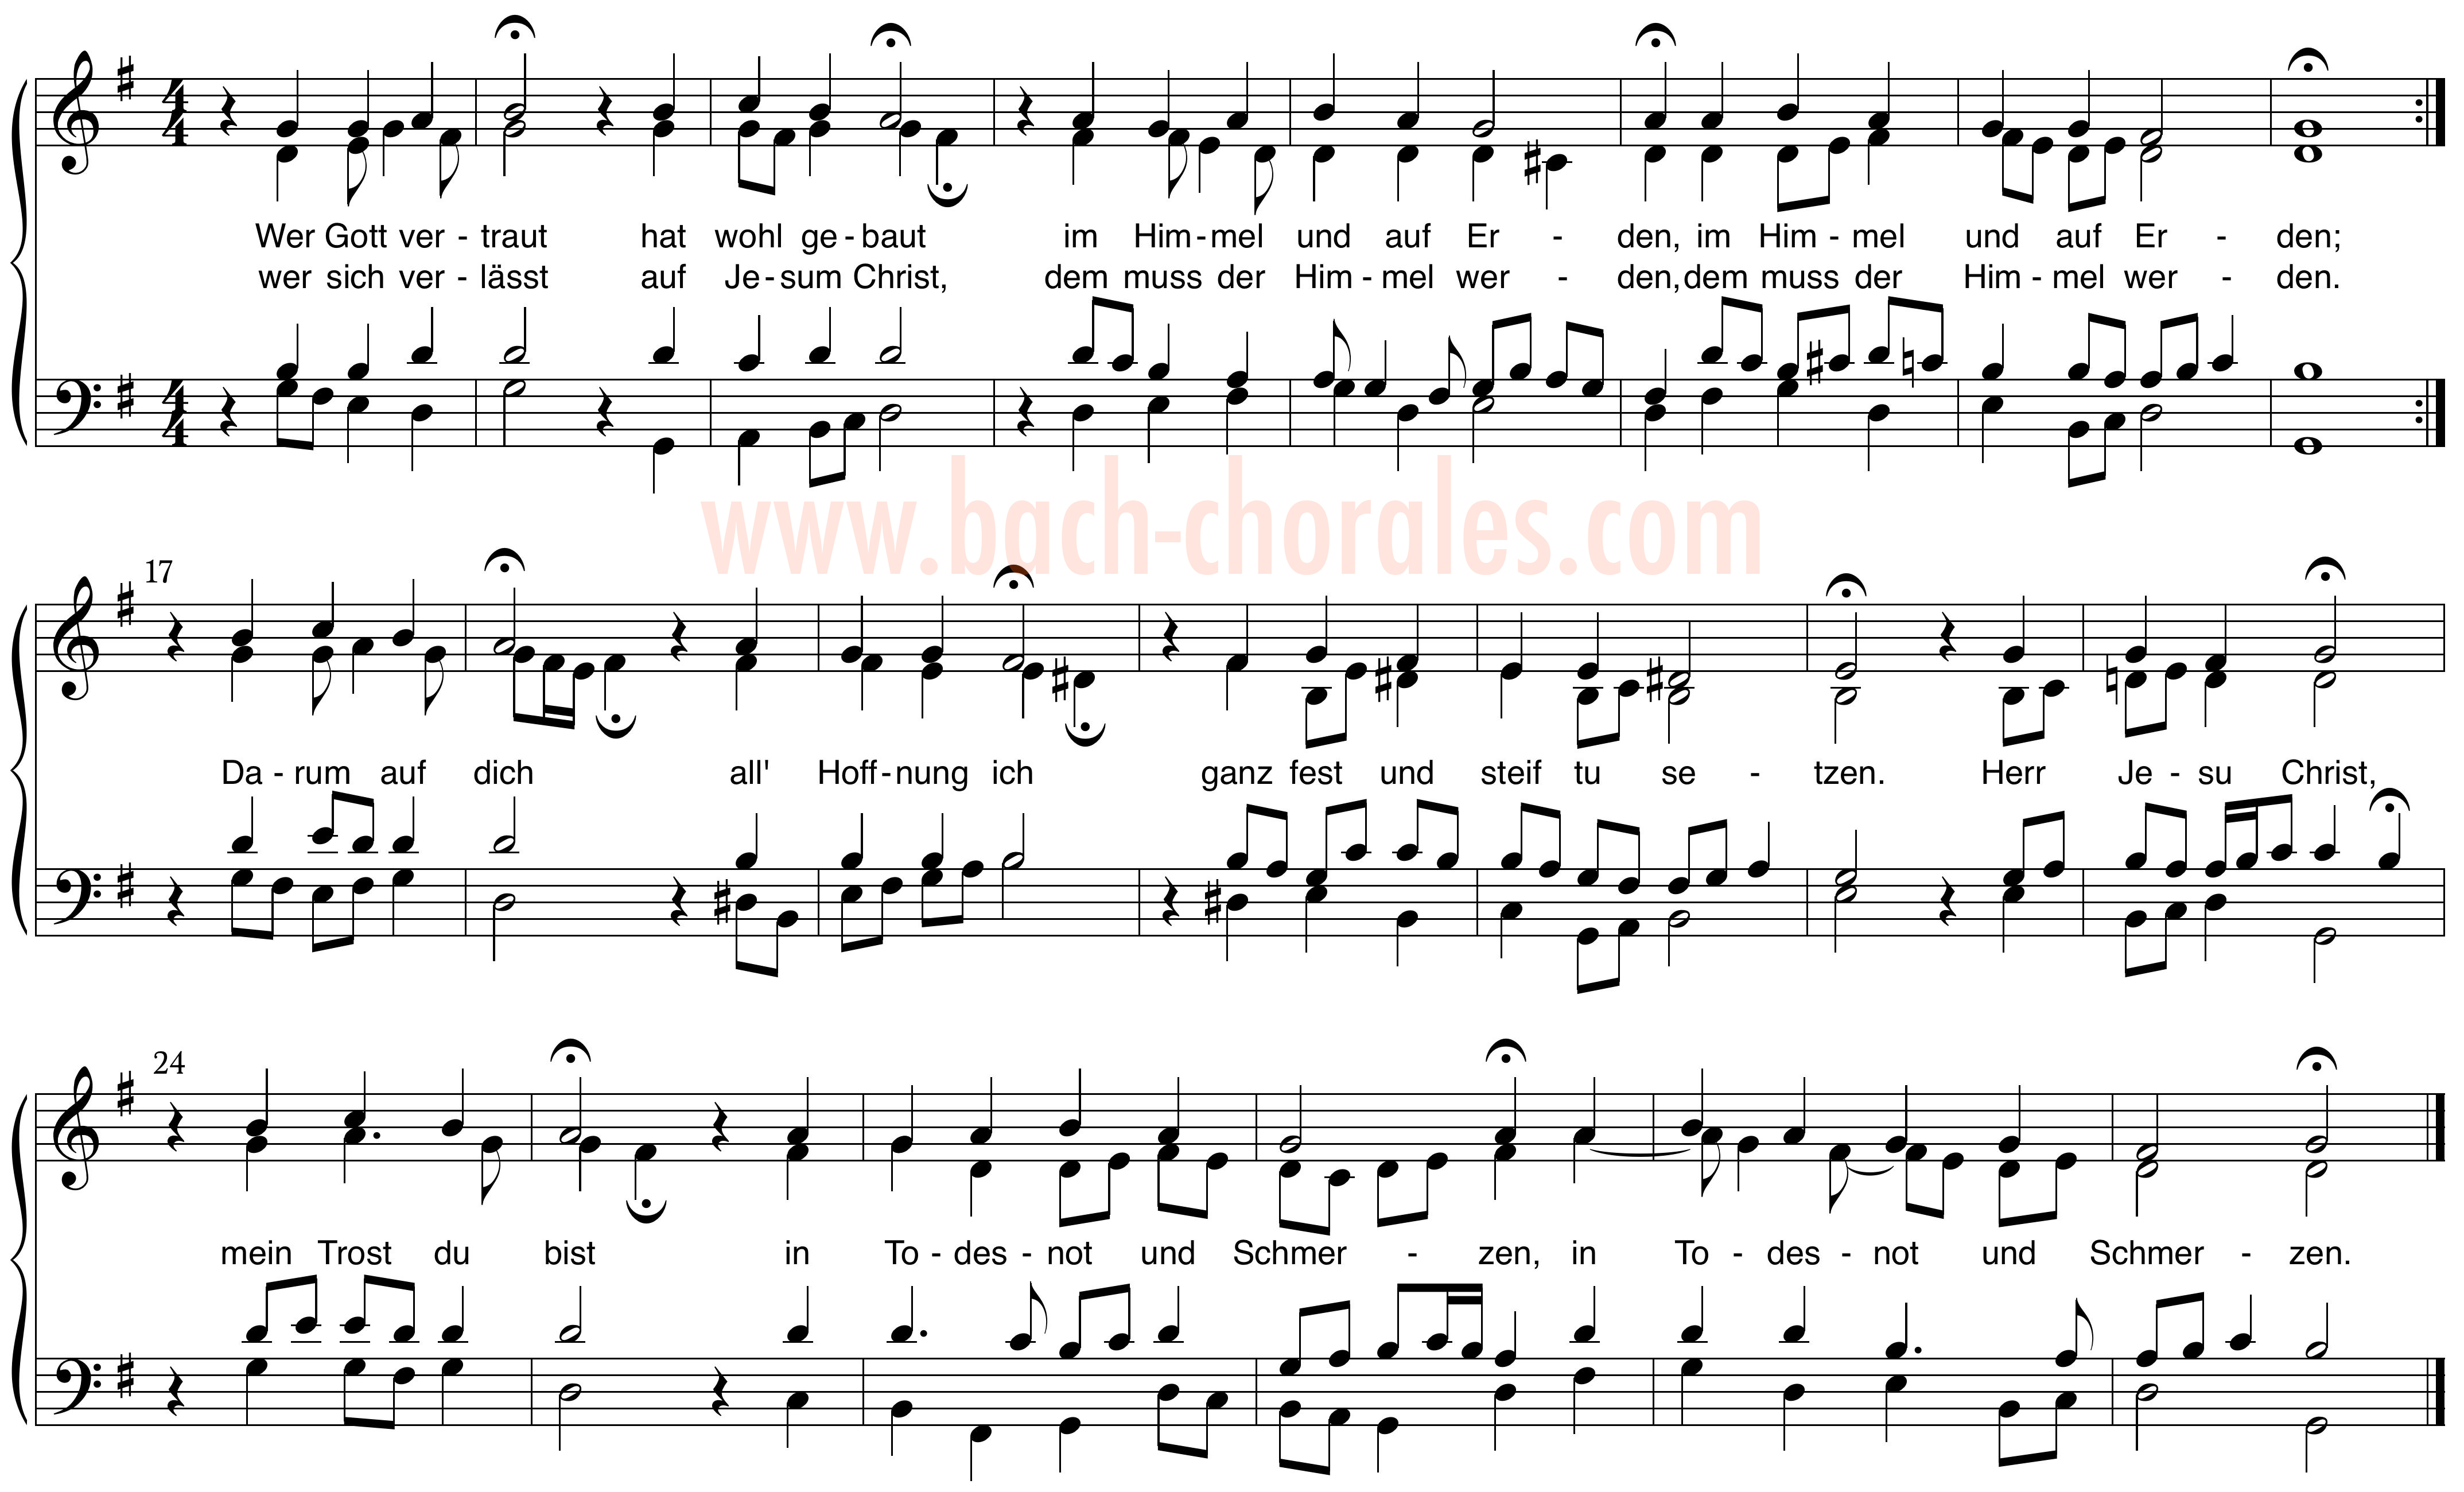 notenbeeld BWV 433 op https://www.bach-chorales.com/